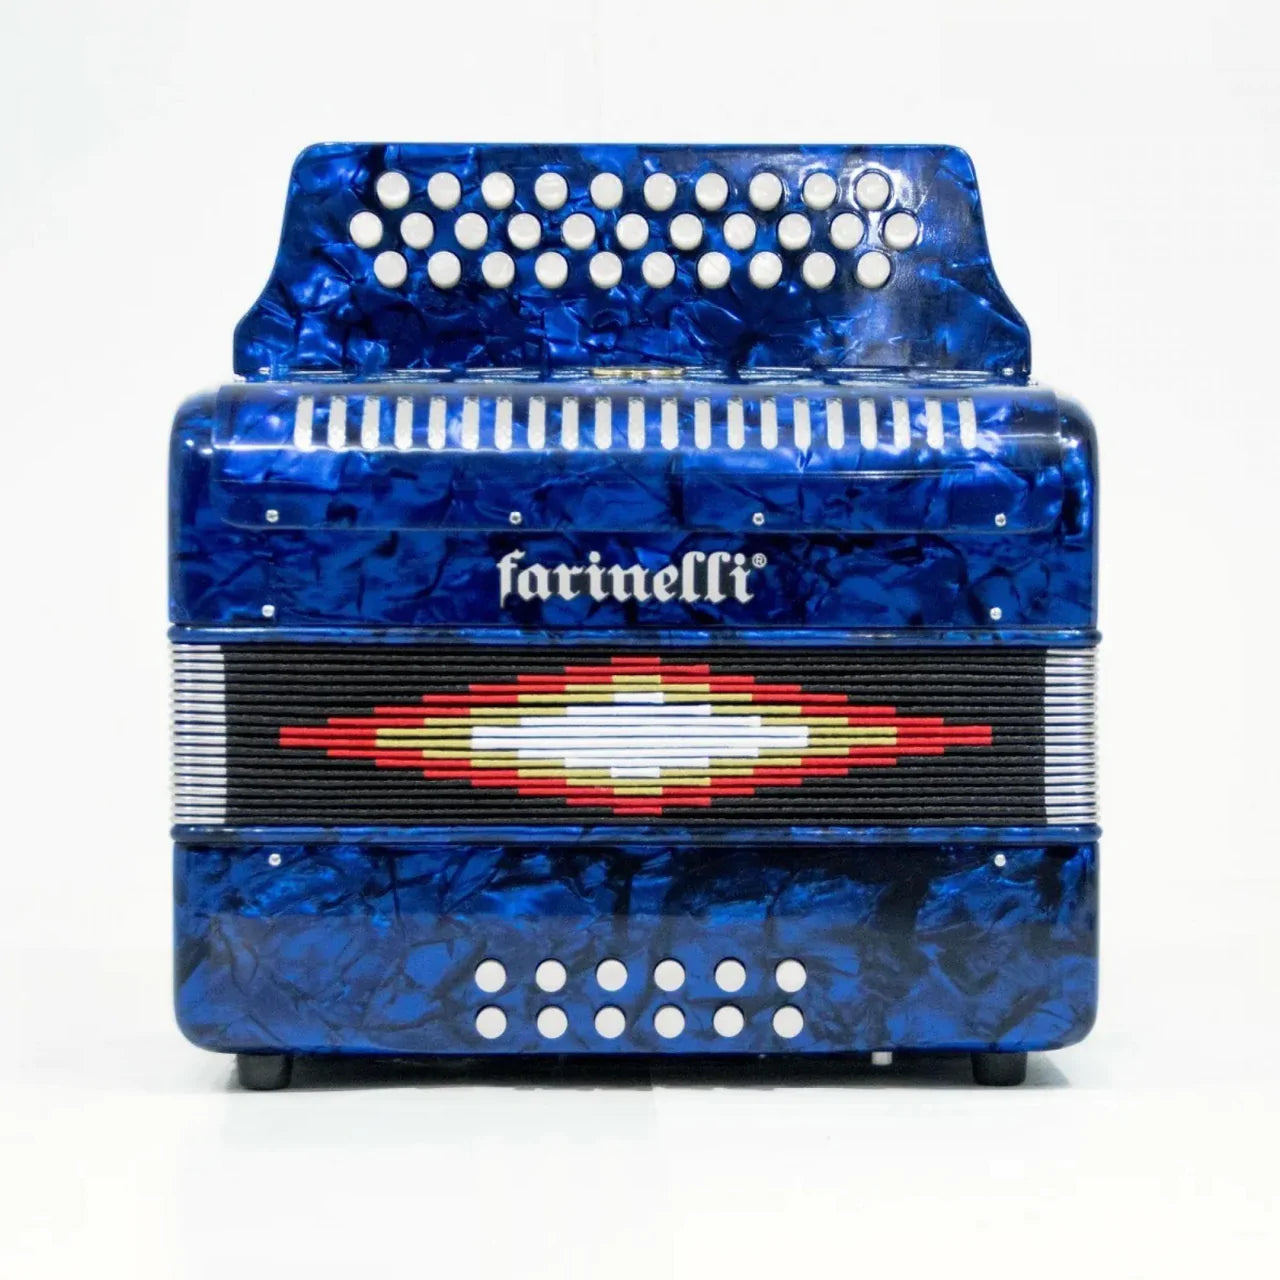 Acordeon Farinelli Color Azul 31 Botones y 12 Bajos Modelo 3012FAA –  Sonoritmo Audio profesional e Intrumentos musicales